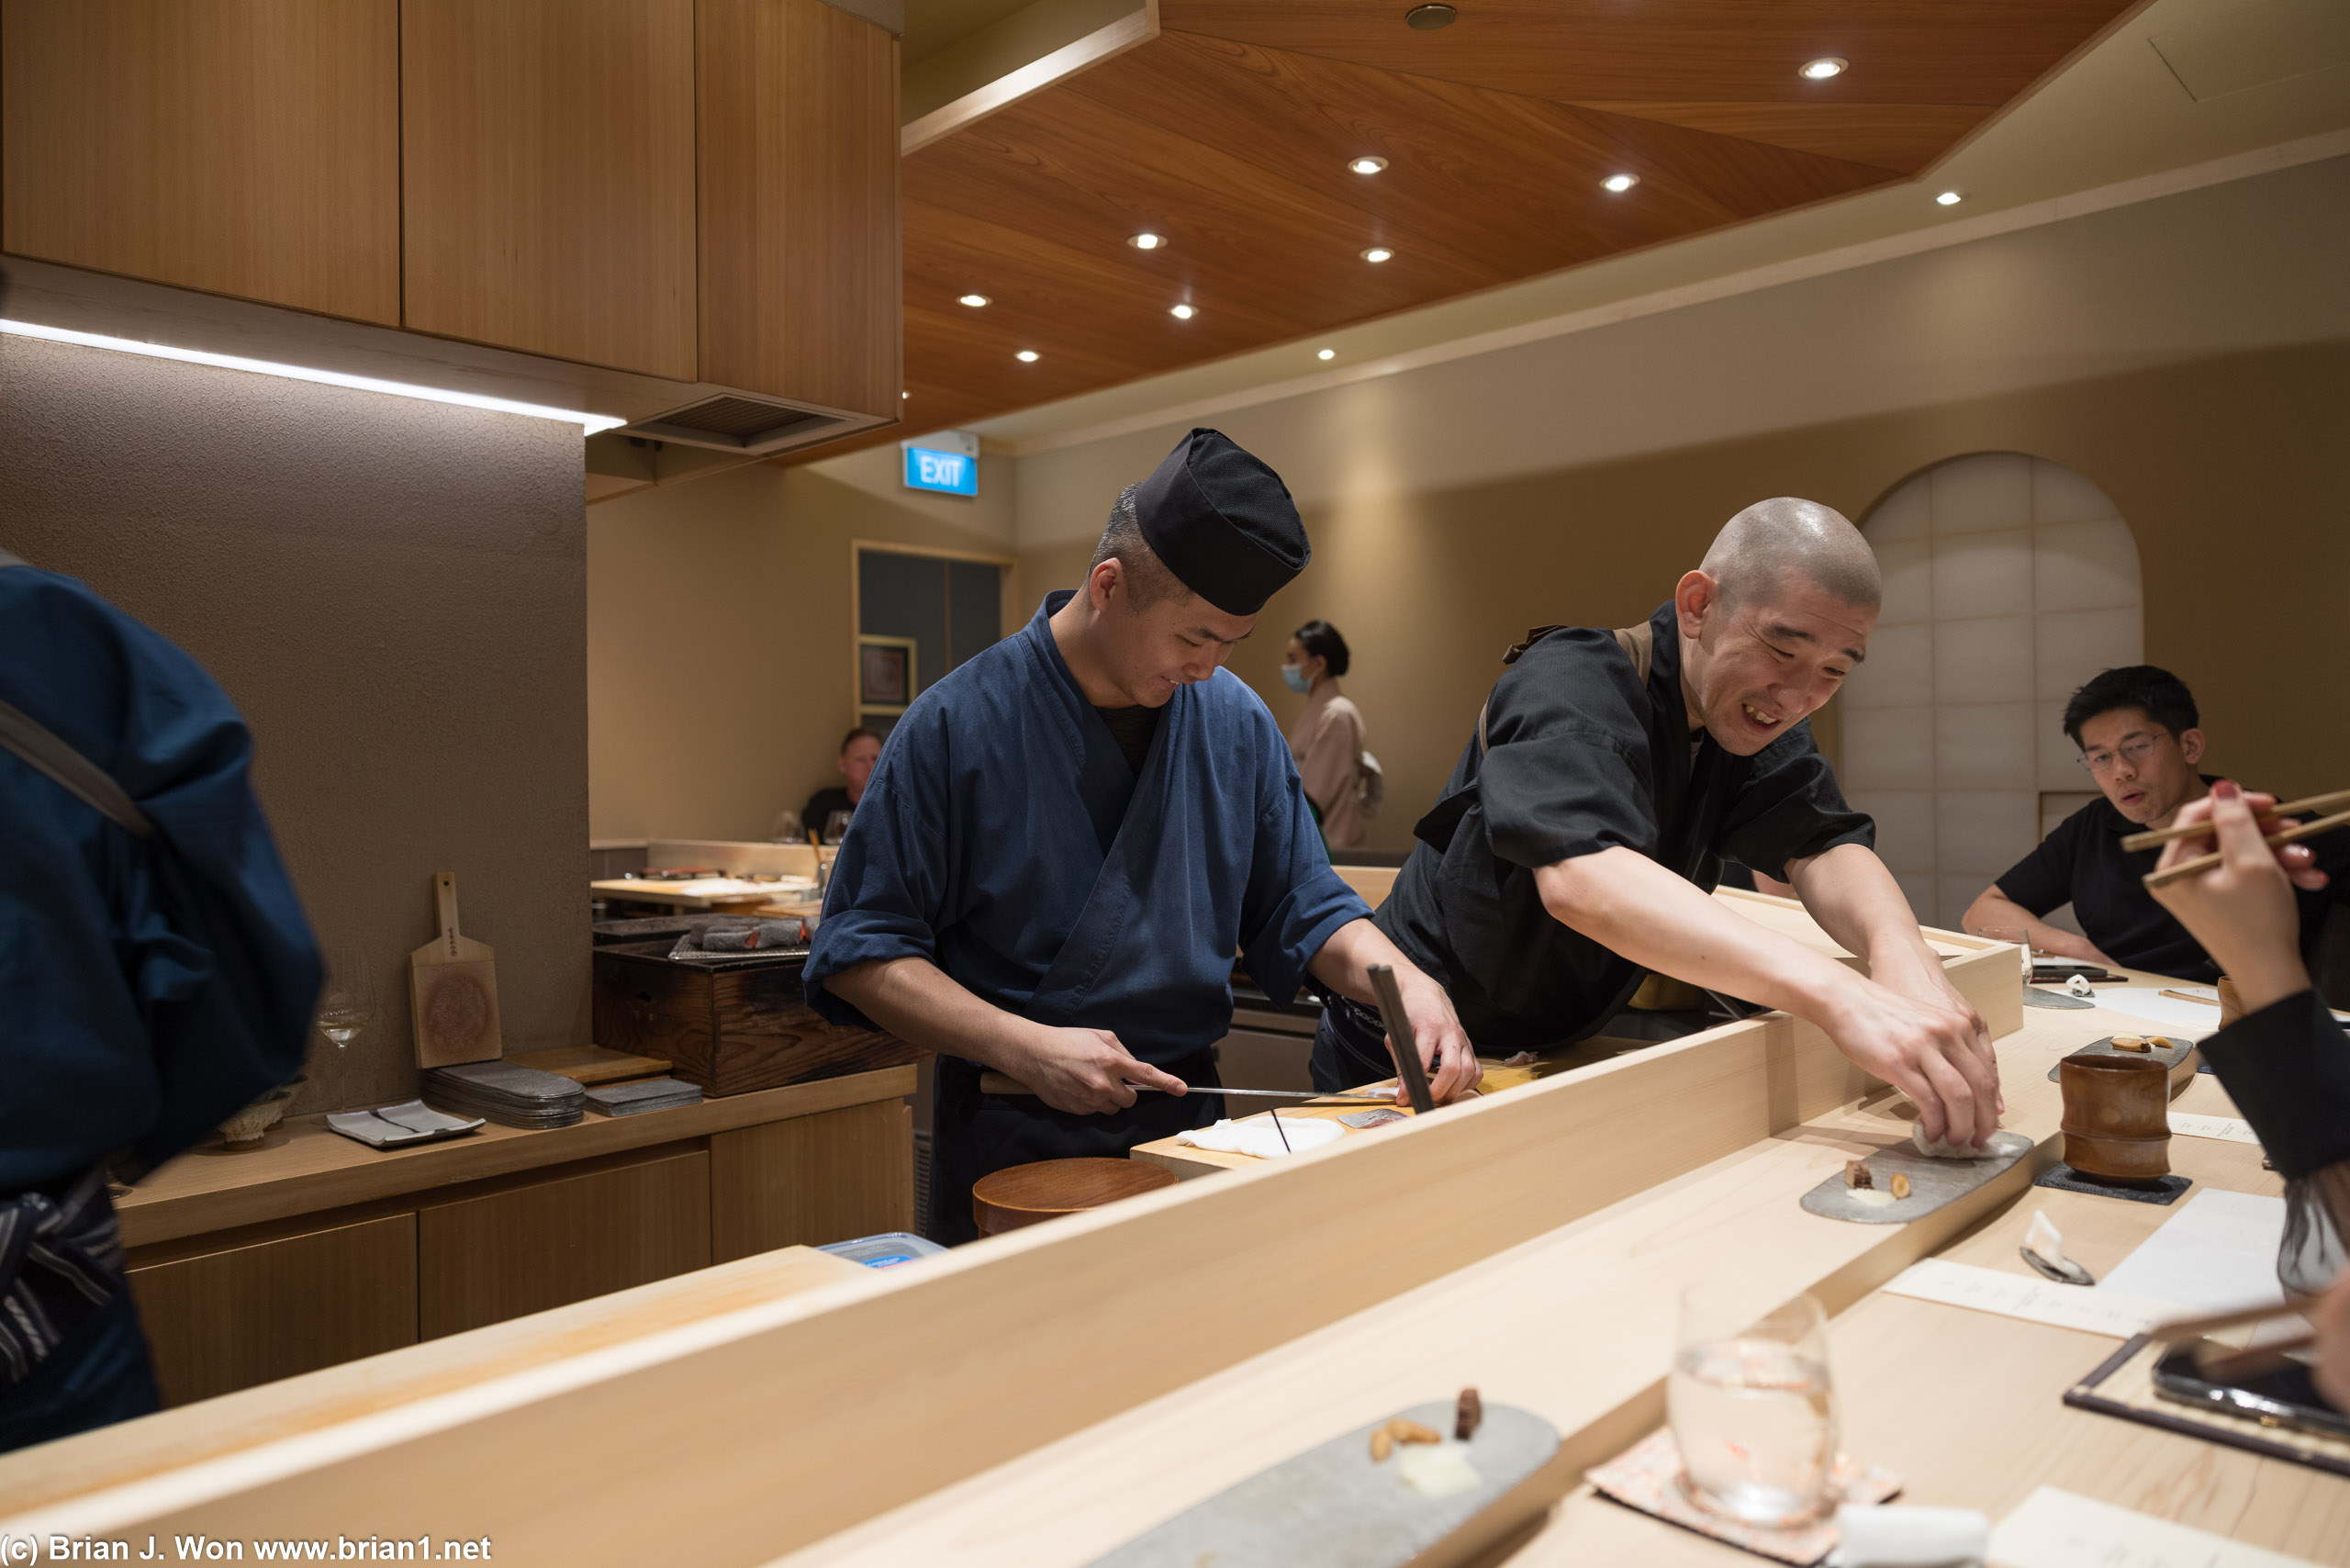 Chef Tomoo Kimura at right.